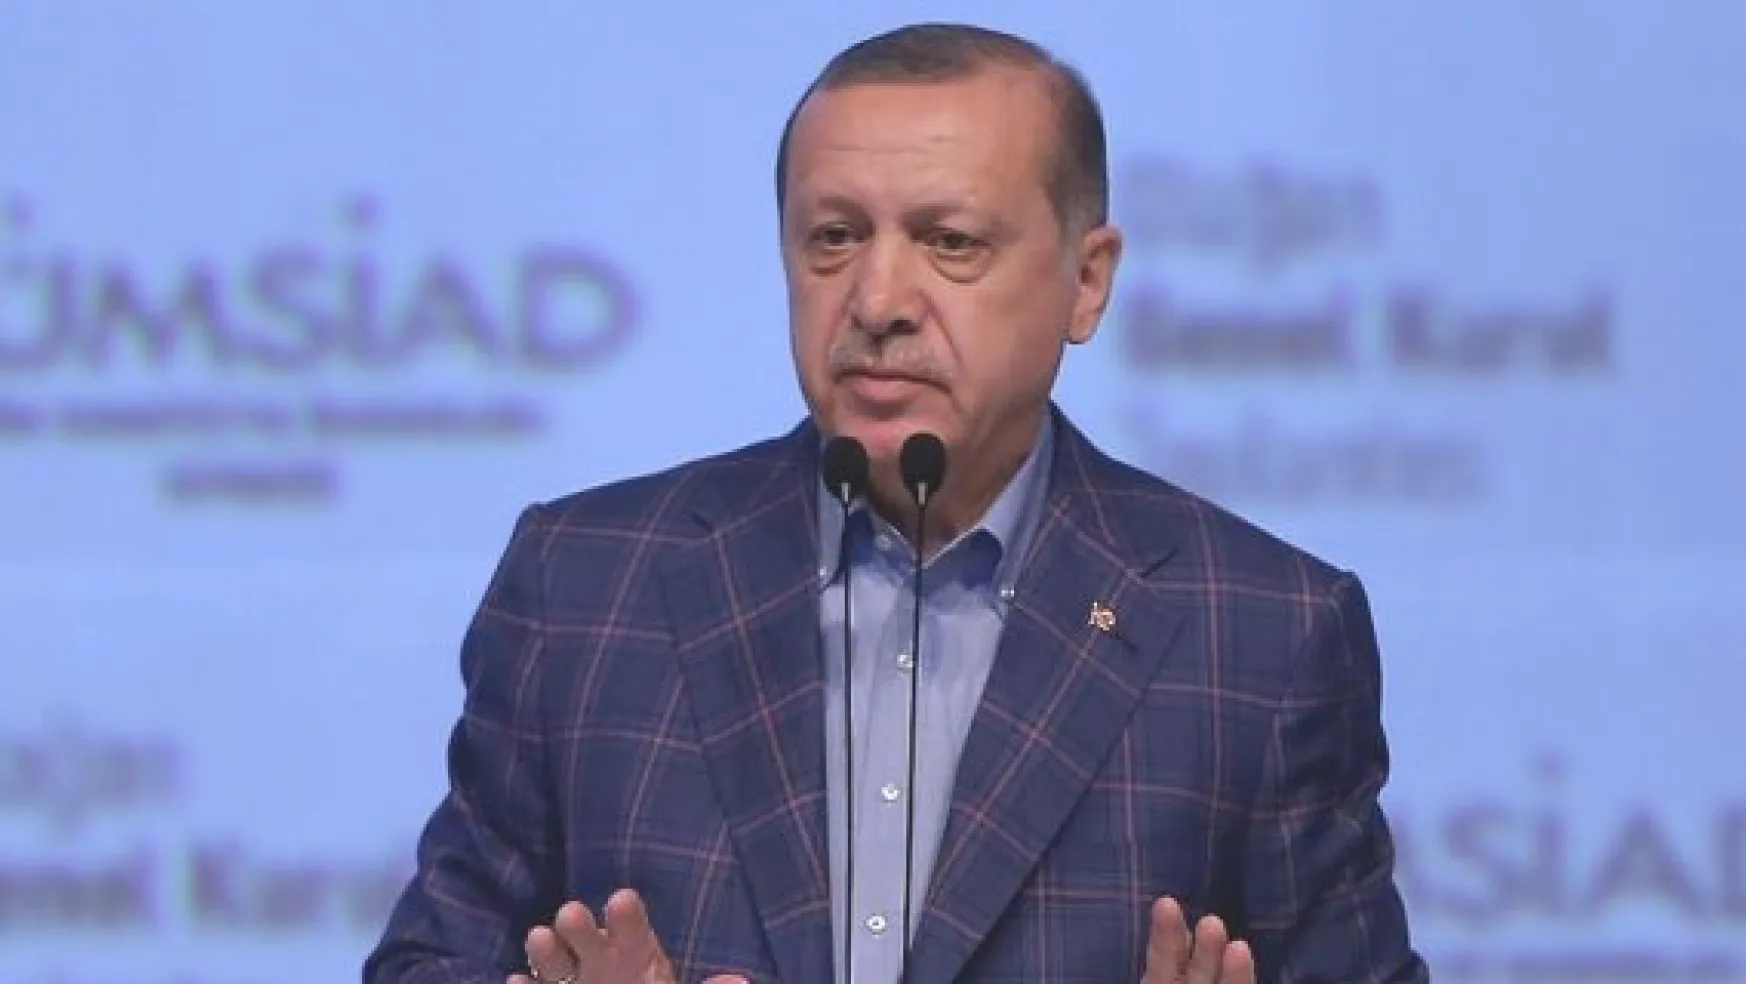 Cumhurbaşkanı Erdoğan: Tüm ihanet çetelerinin kökünü kazımakta kararlıyız